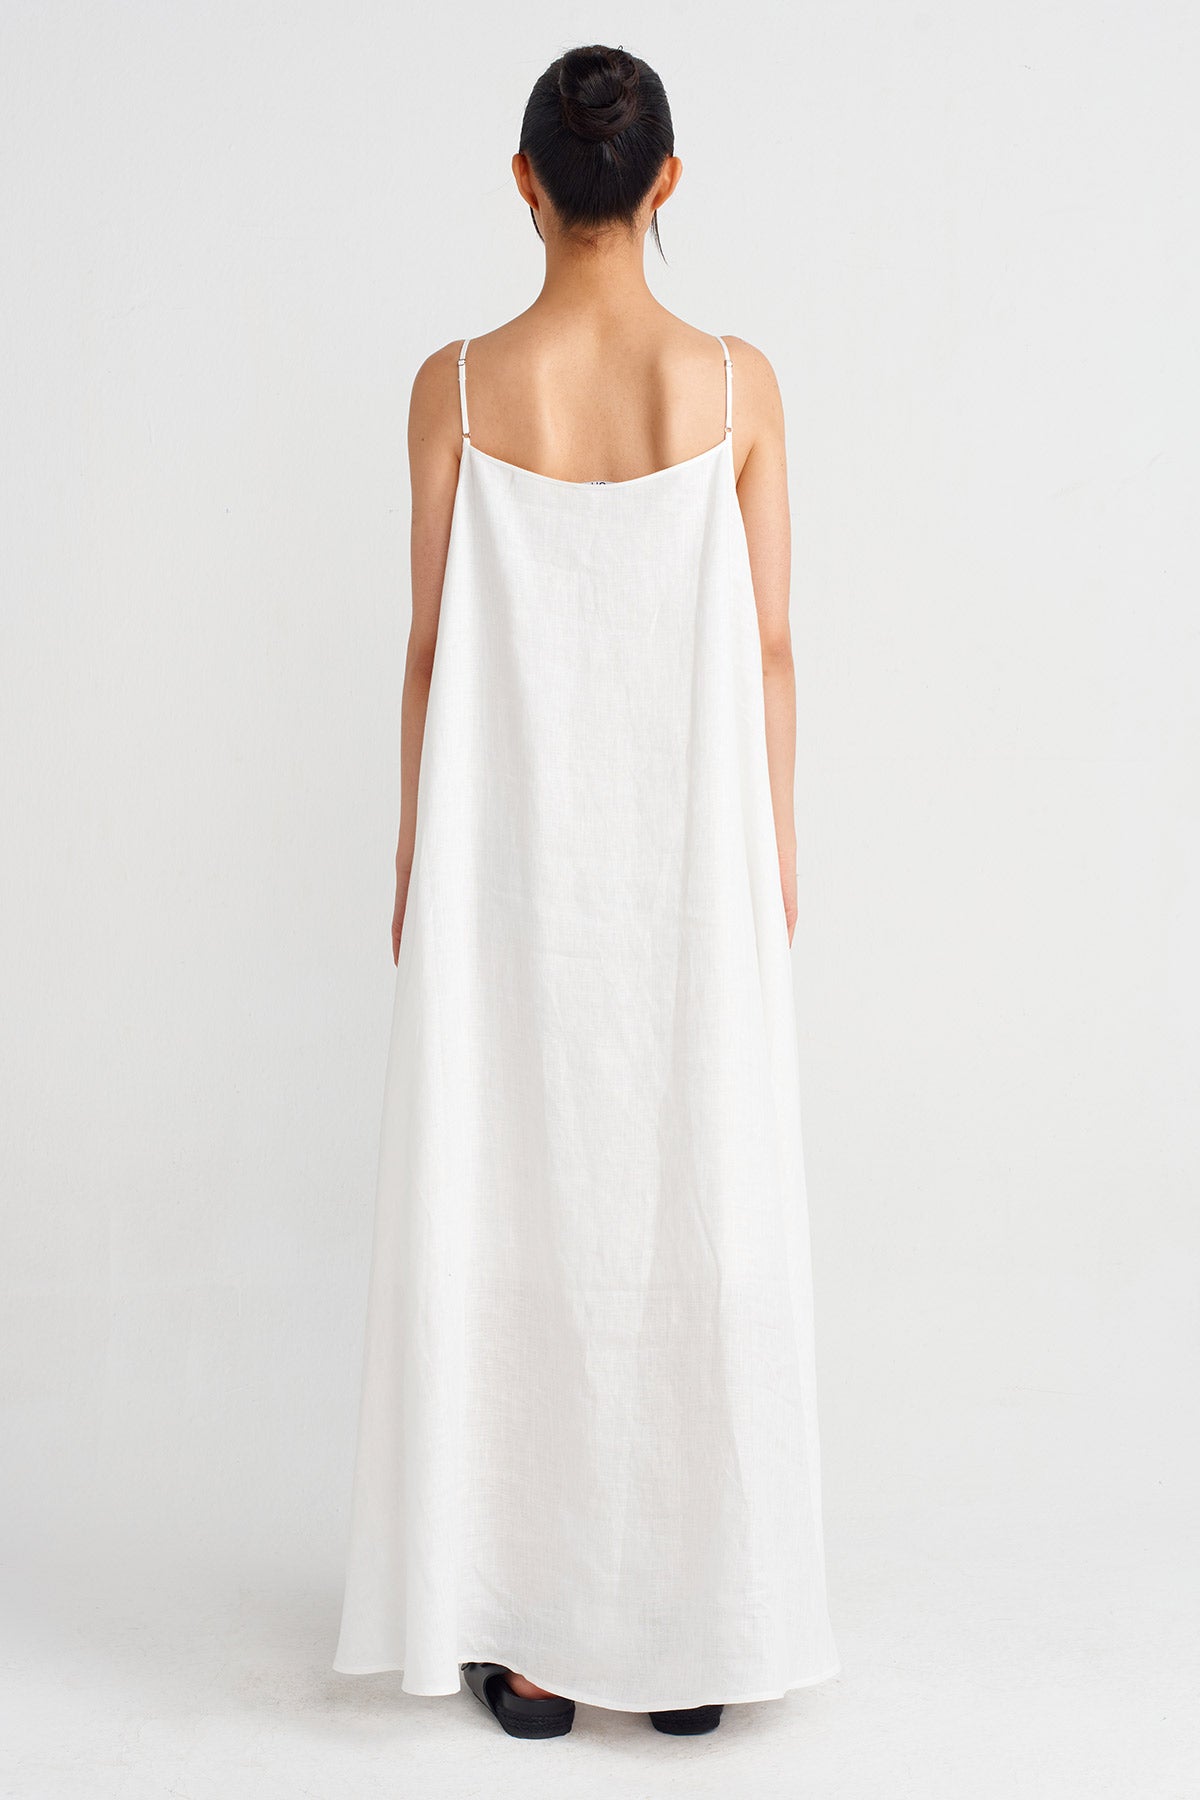 Kırık Beyaz İnce Askılı Keten Elbise-Y244014051